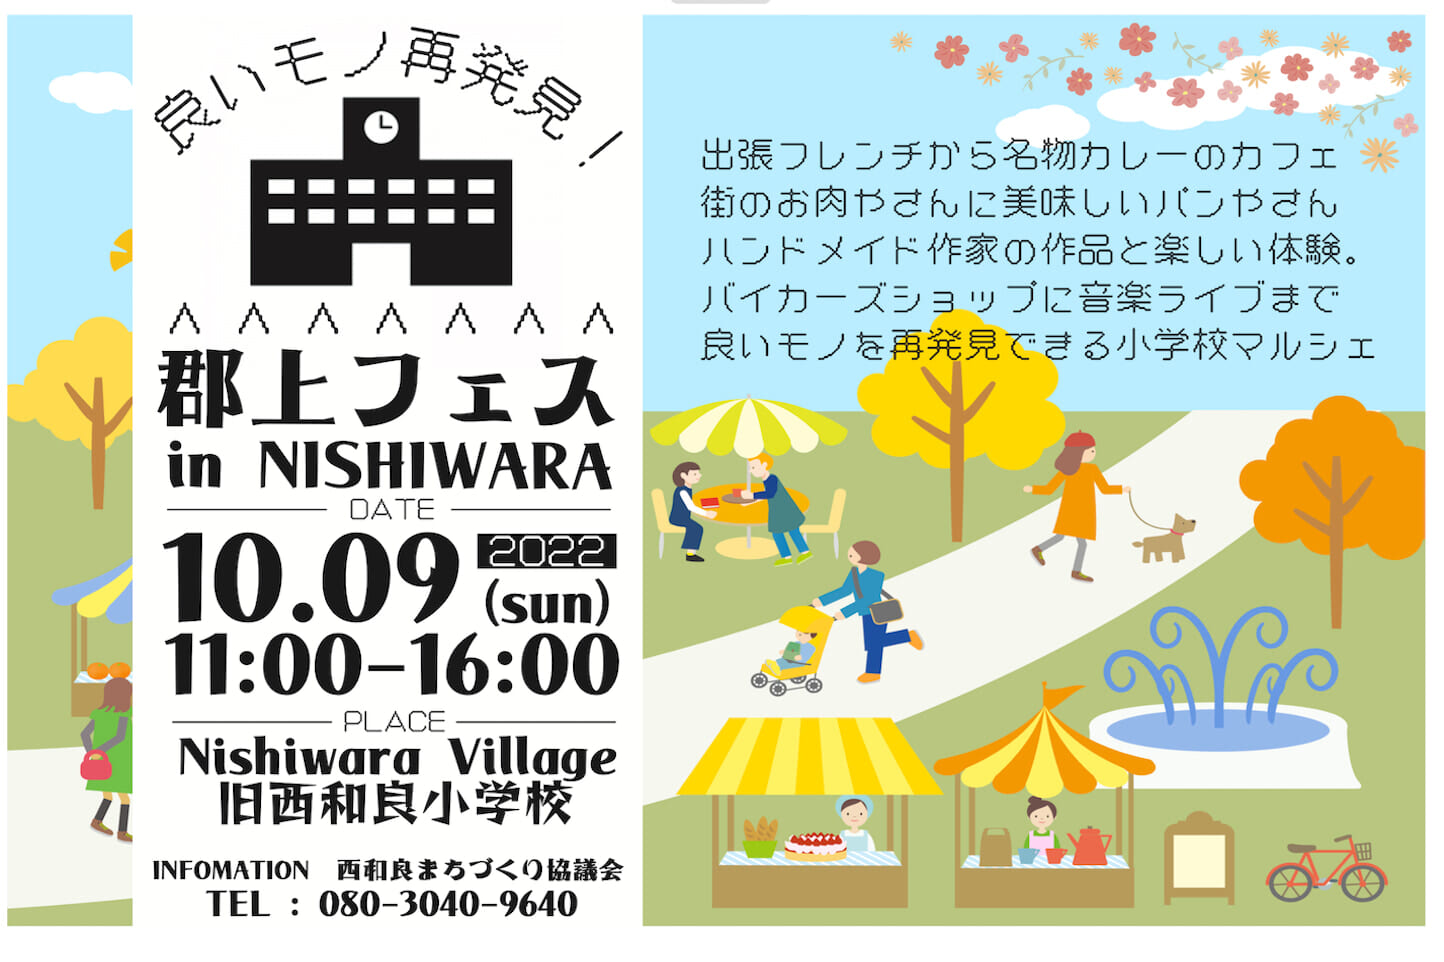 郡上フェス in NISHIWARA VILLAGE スライダー画像1